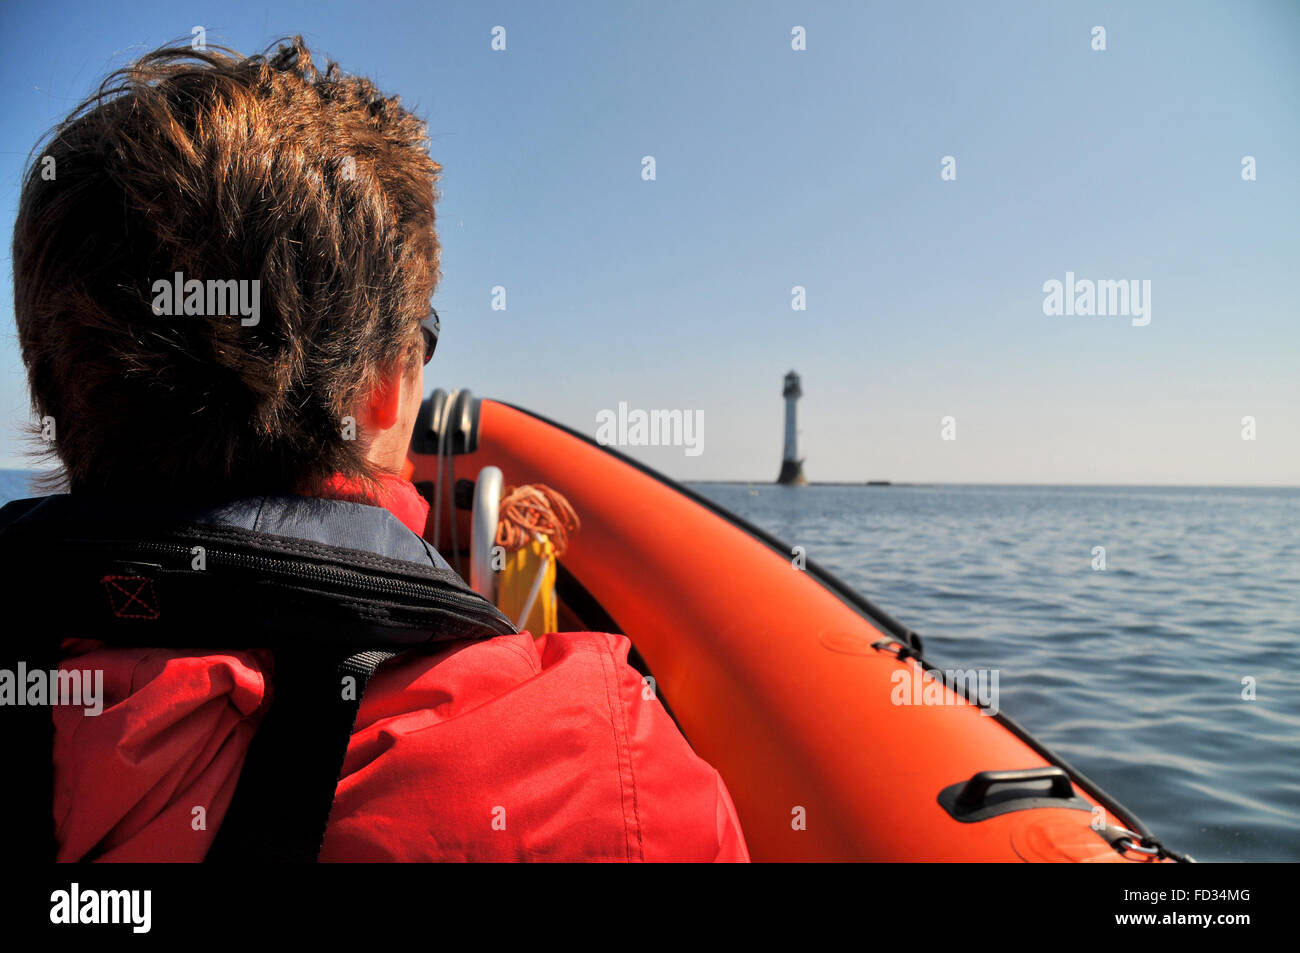 Un jeune homme voyageant sur un bateau gonflable rigide s'approche du phare de Bell Rock, au large de la côte d'Angus en Écosse. Banque D'Images